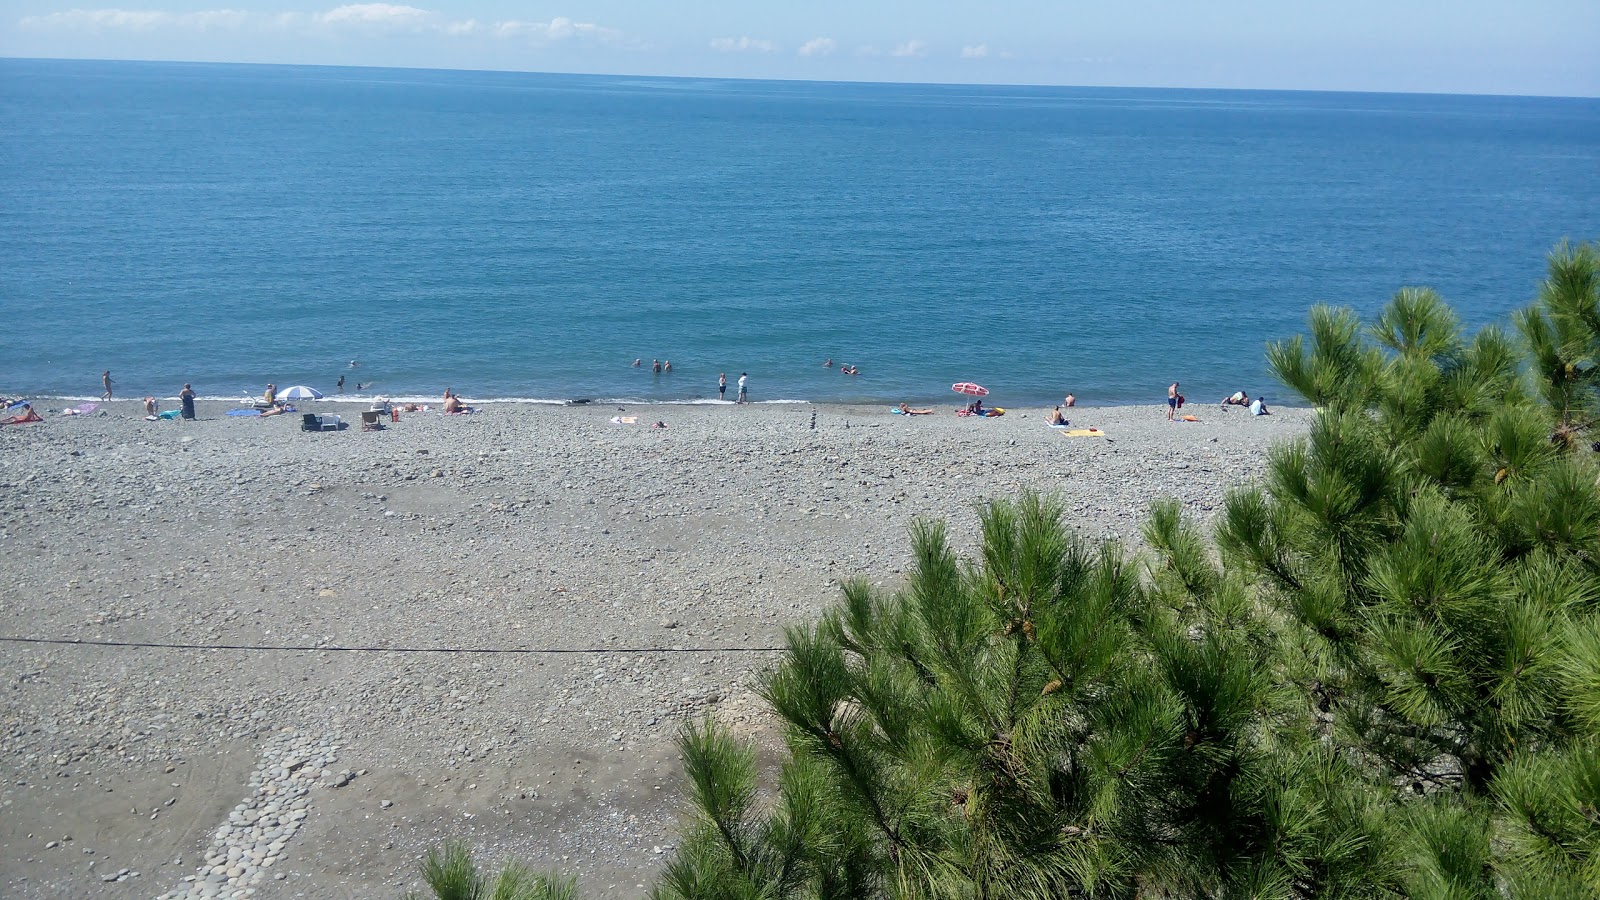 Zdjęcie Kobuleti beach z powierzchnią turkusowa czysta woda